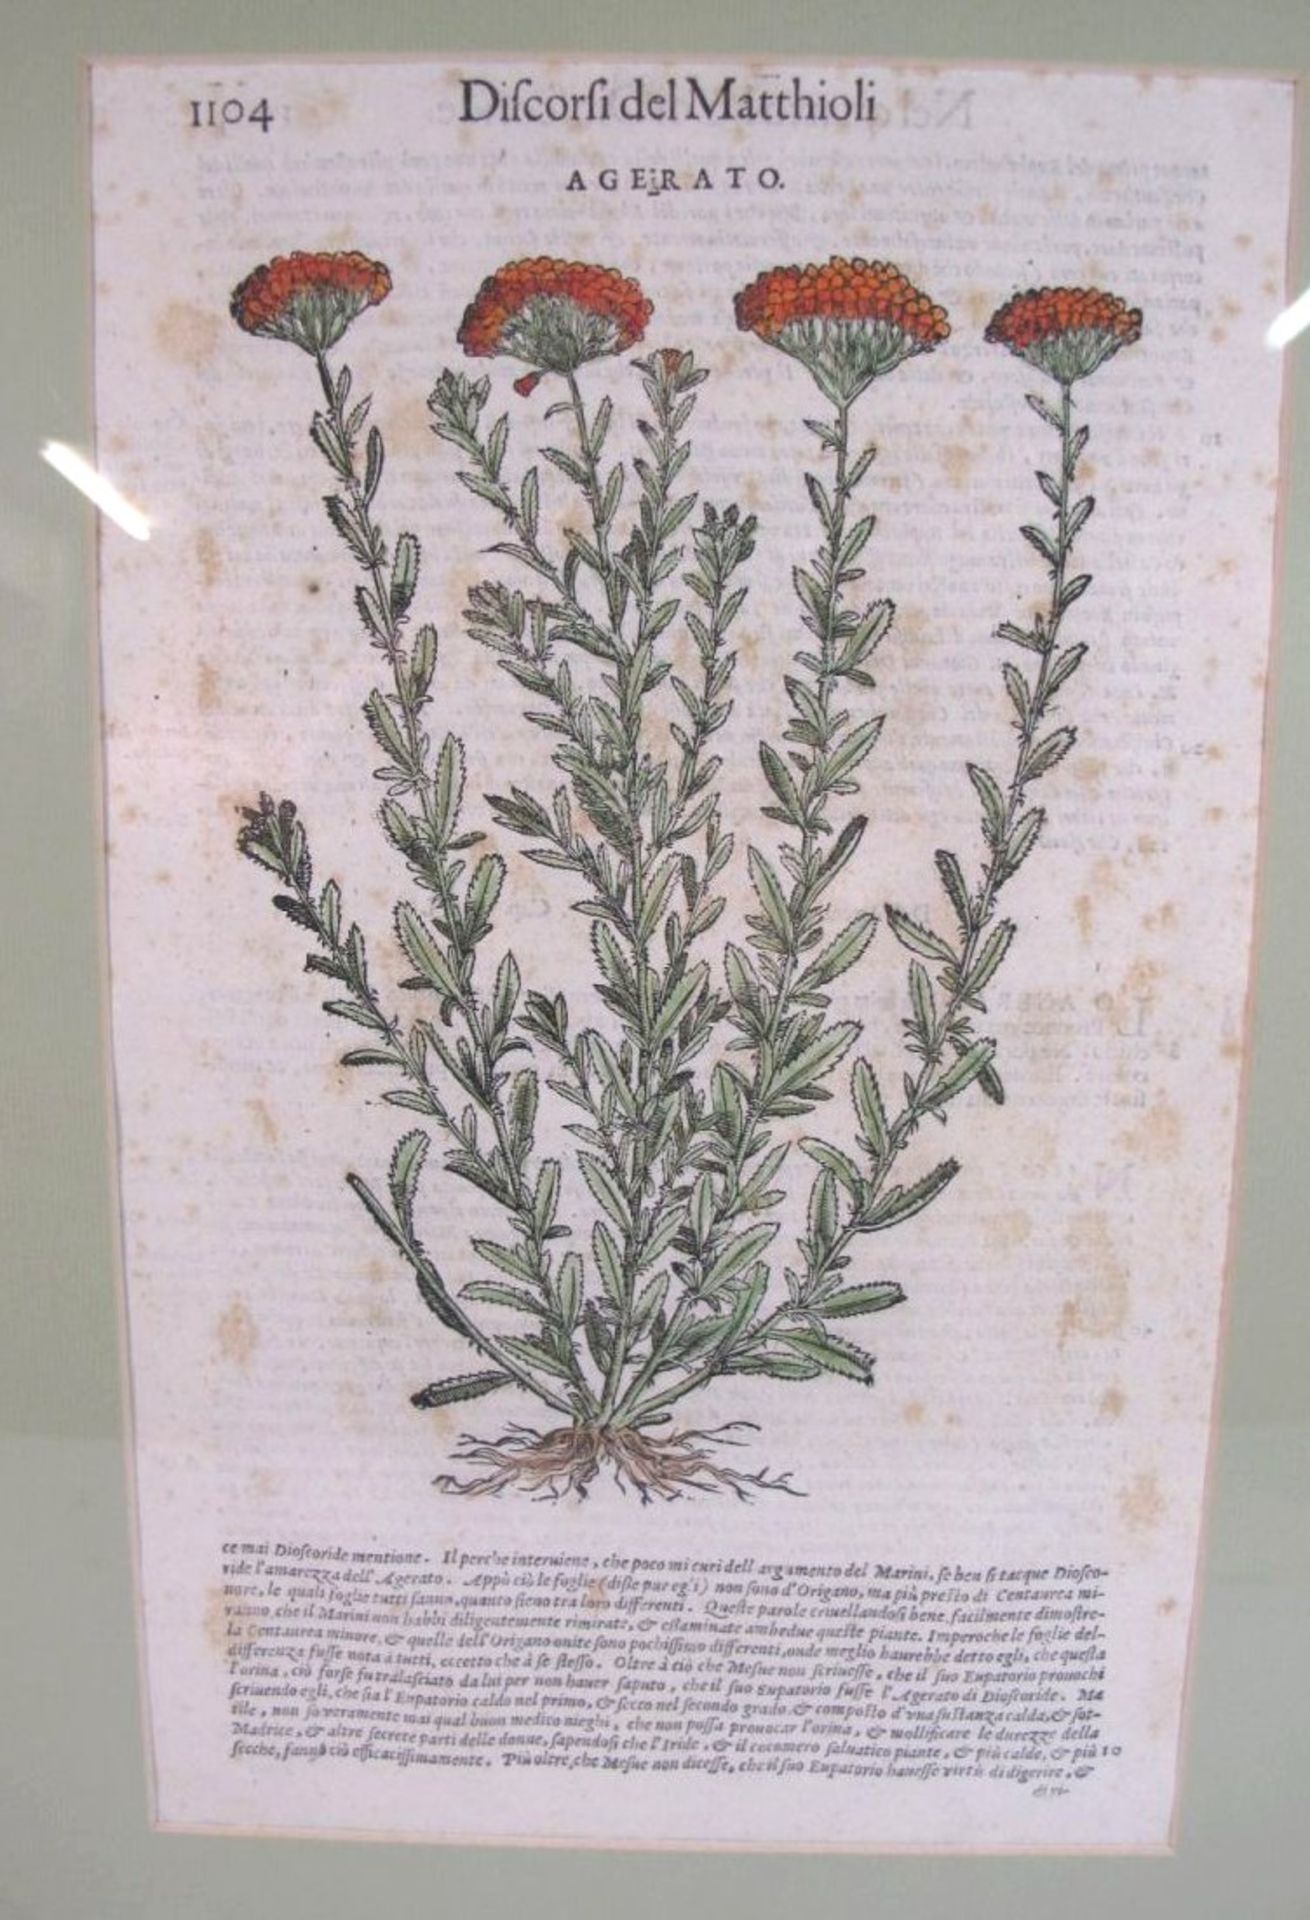 Pflanzenstich "Agerato" Taflef aus Discorsi del Matthioli, gerahmt/Glas, RG 48 x 35cm.